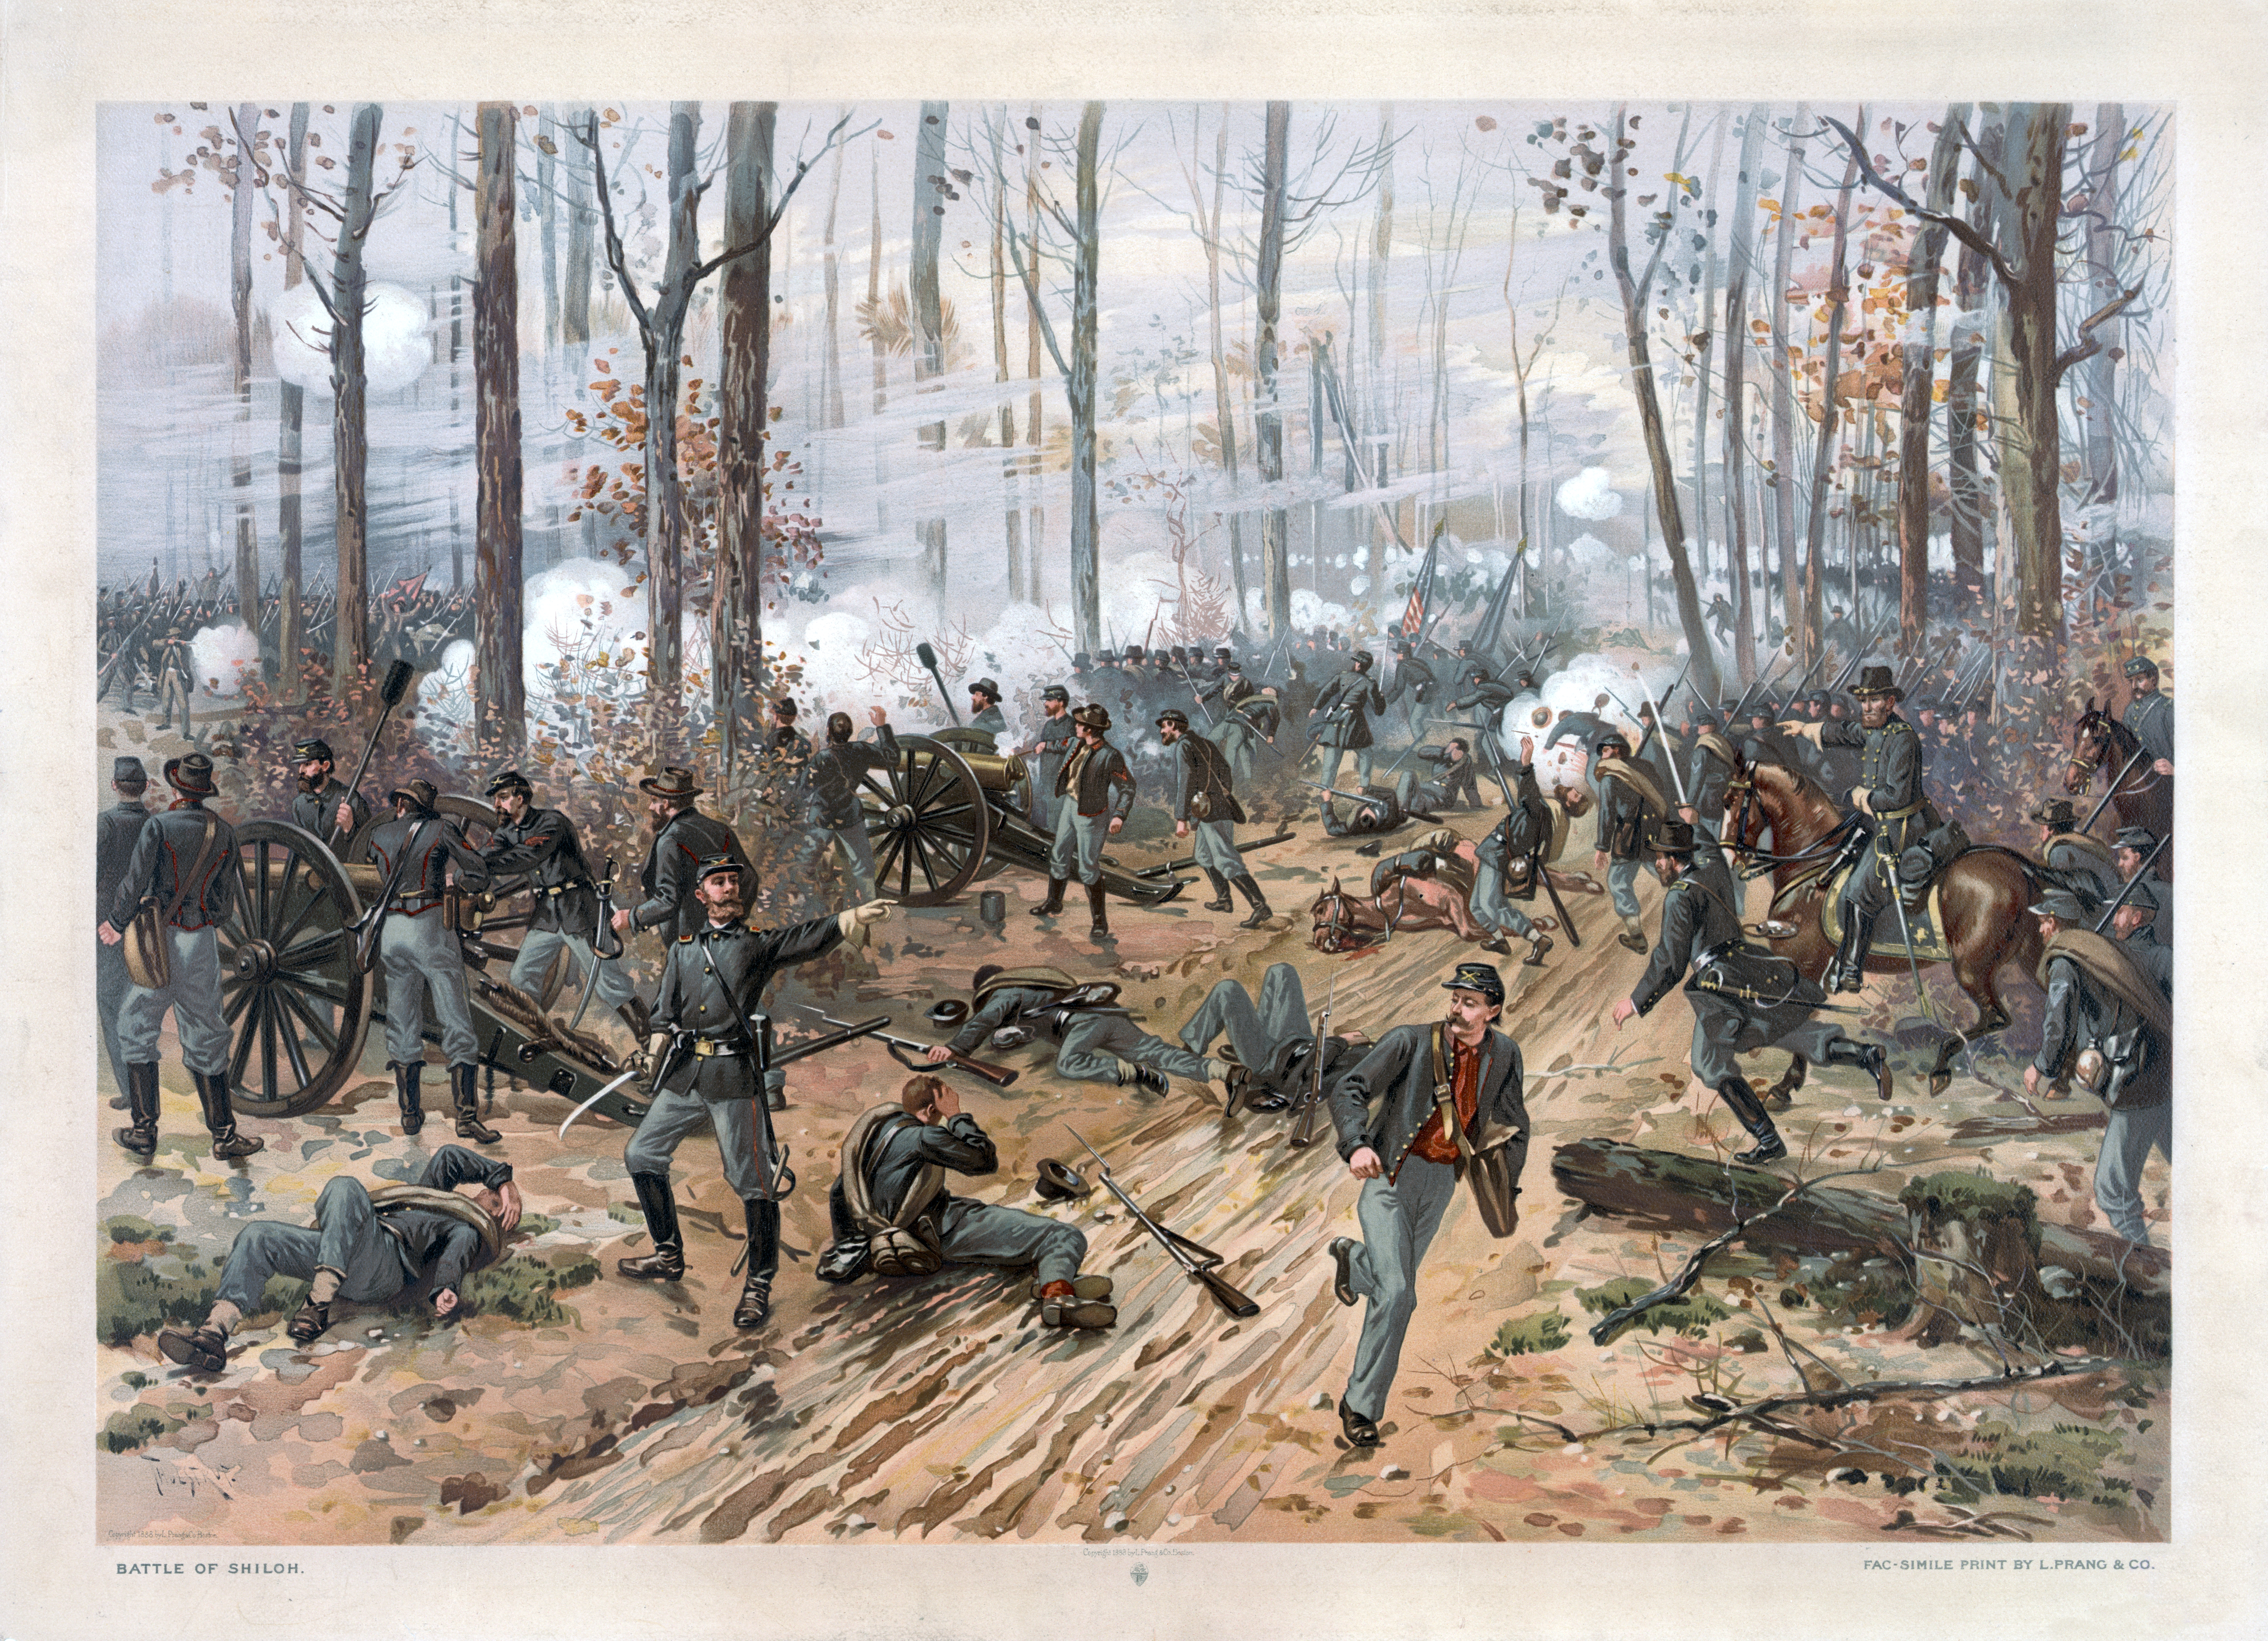 Battle of Shiloh by Thure de Thulstrup